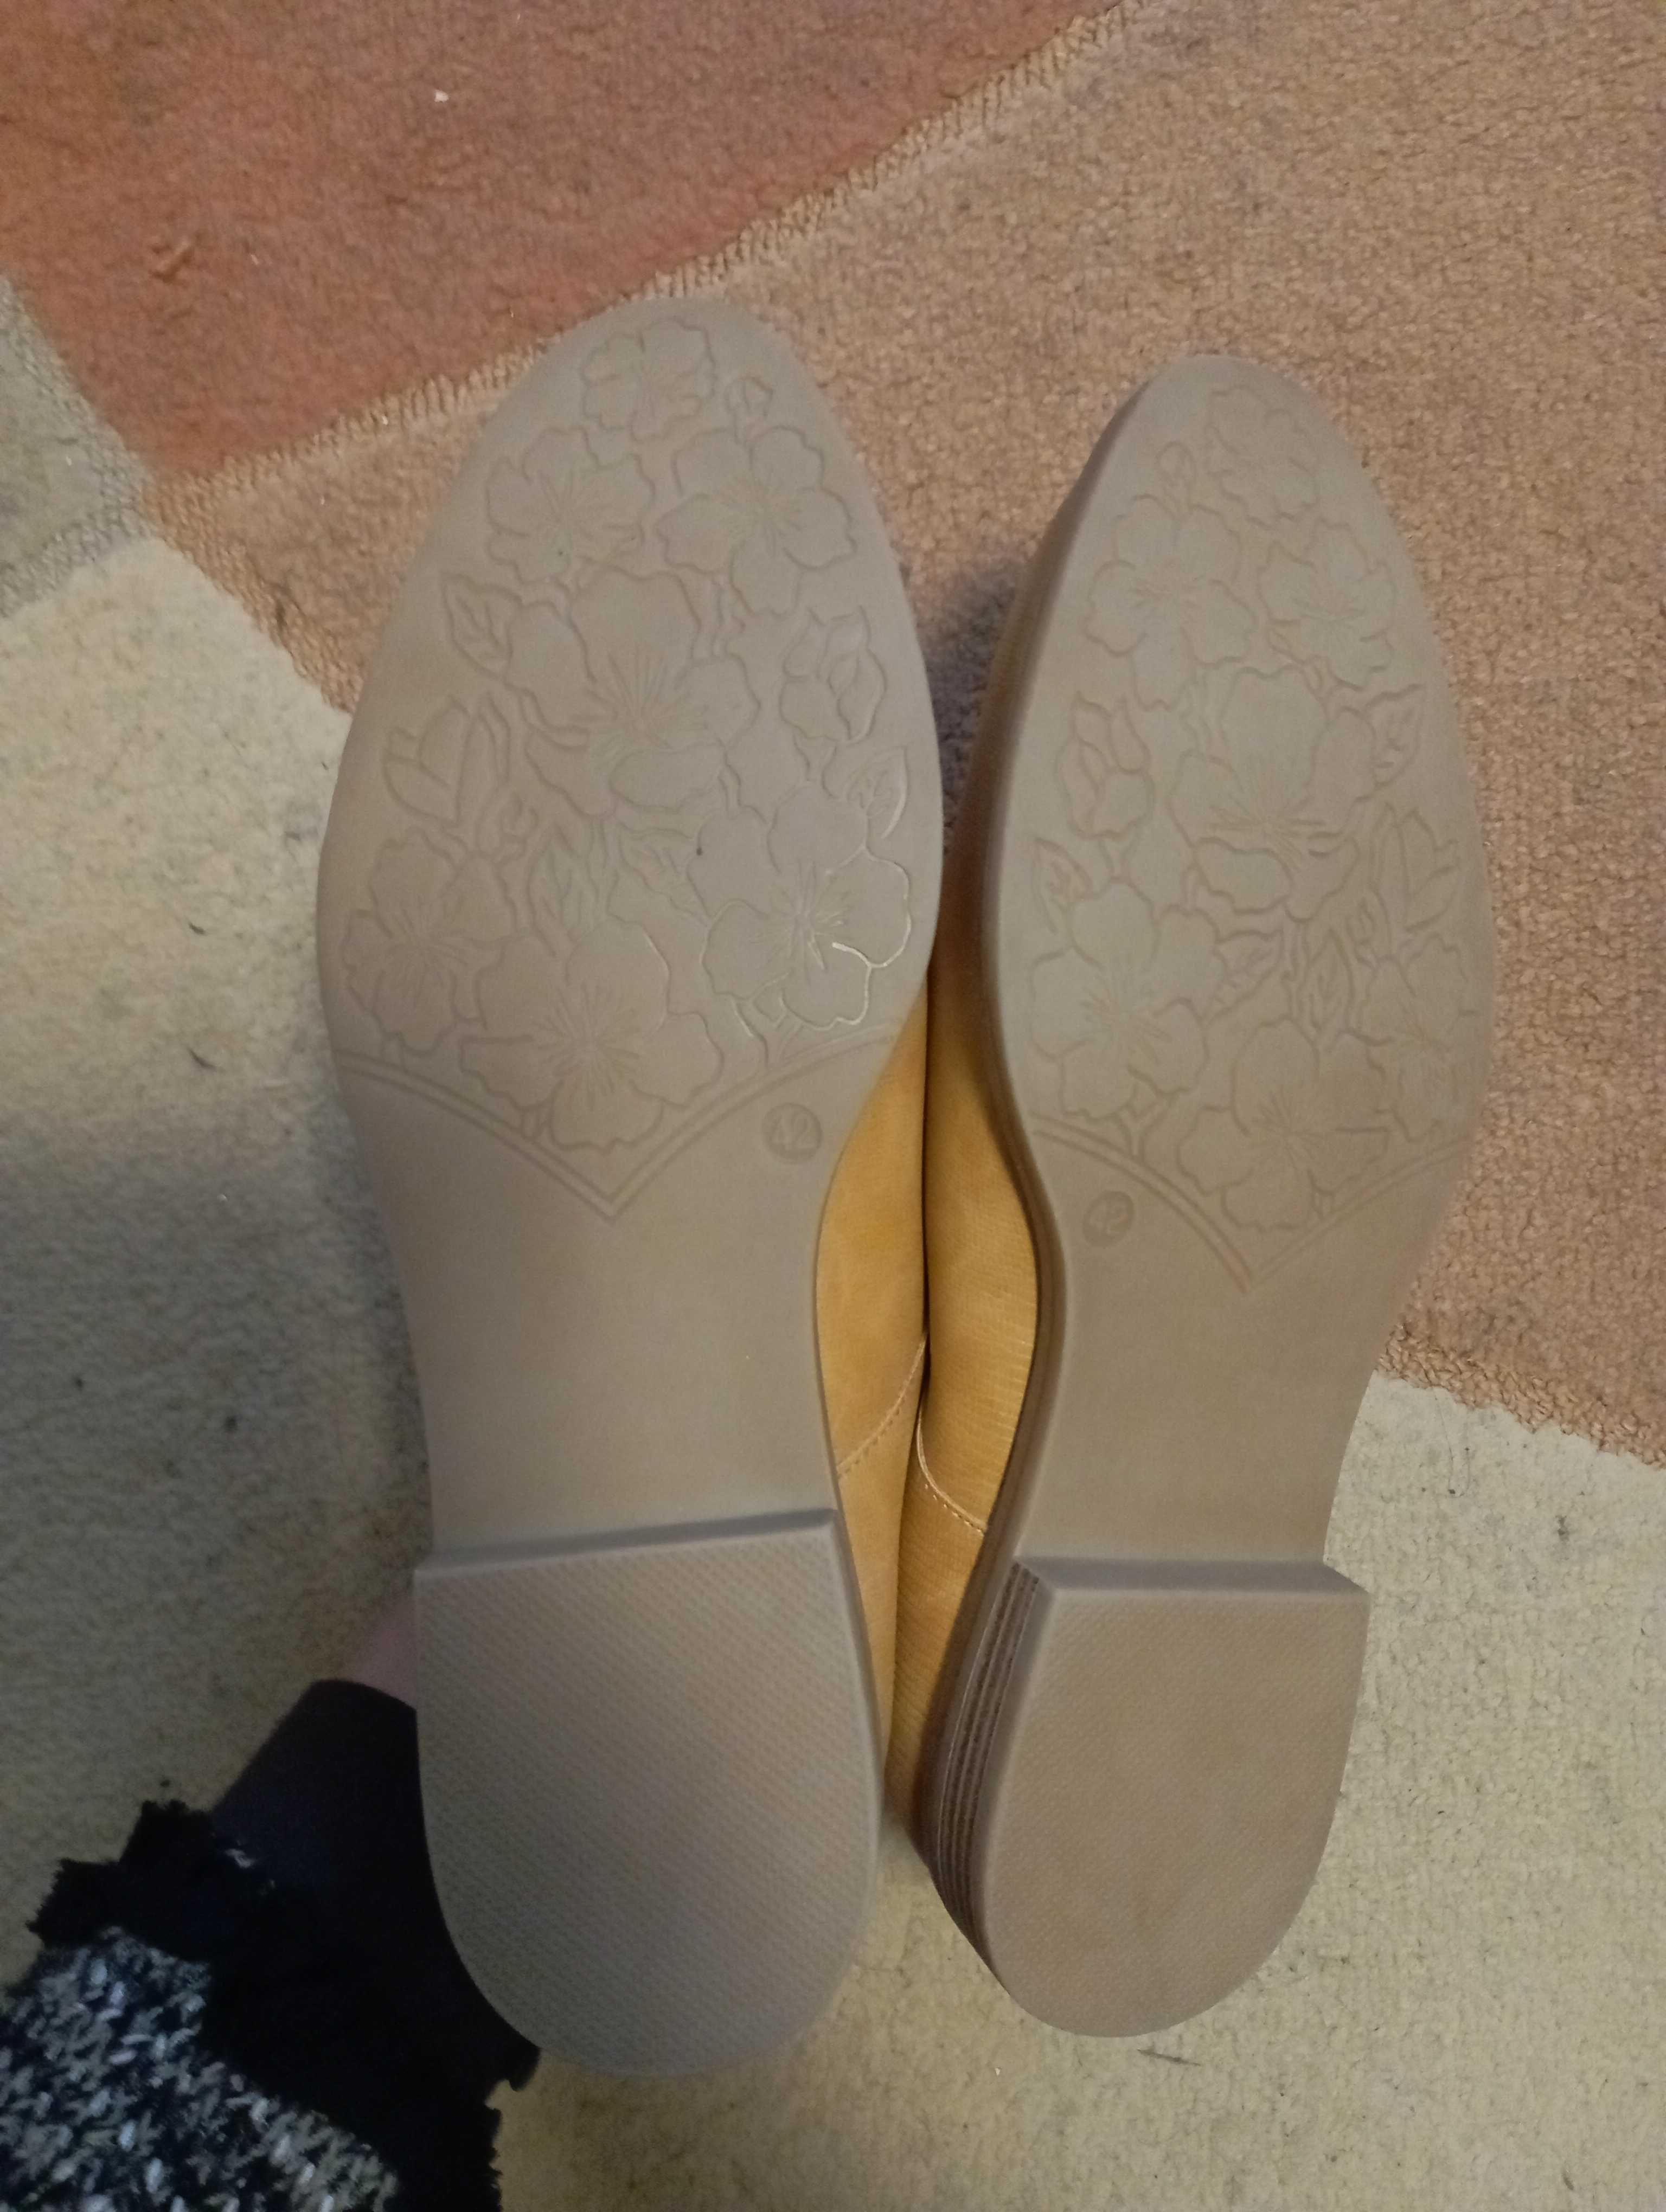 Елегантни дамски обувки  Graceland, цвят горчица, №42, стелка 26 см.